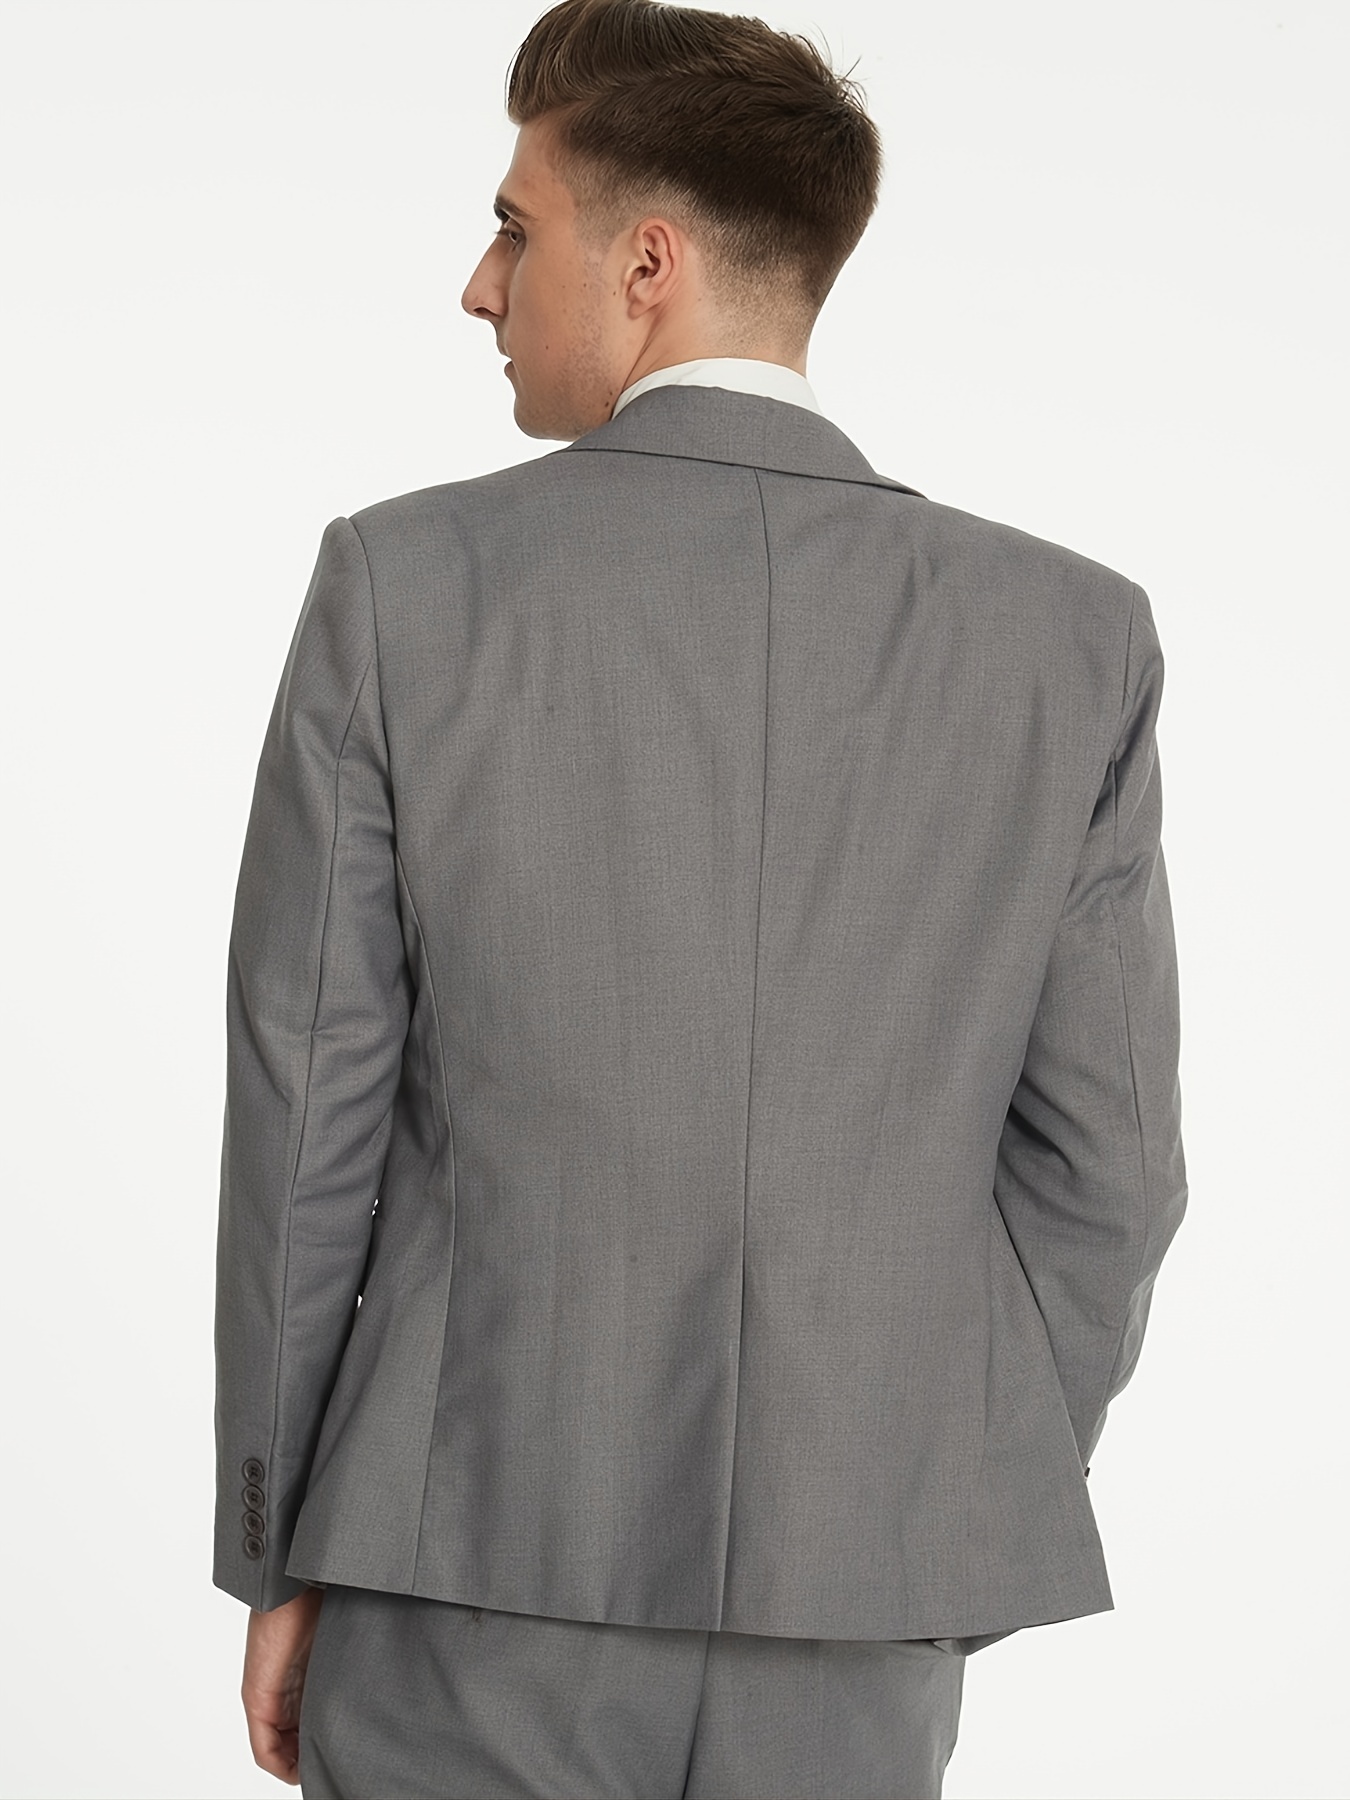 Solid Suits, Men's Two-piece Buckle Back Split Lapel Coat + Pants, Fashion  Business Suit Classic Regular Fit Solid Color - Temu